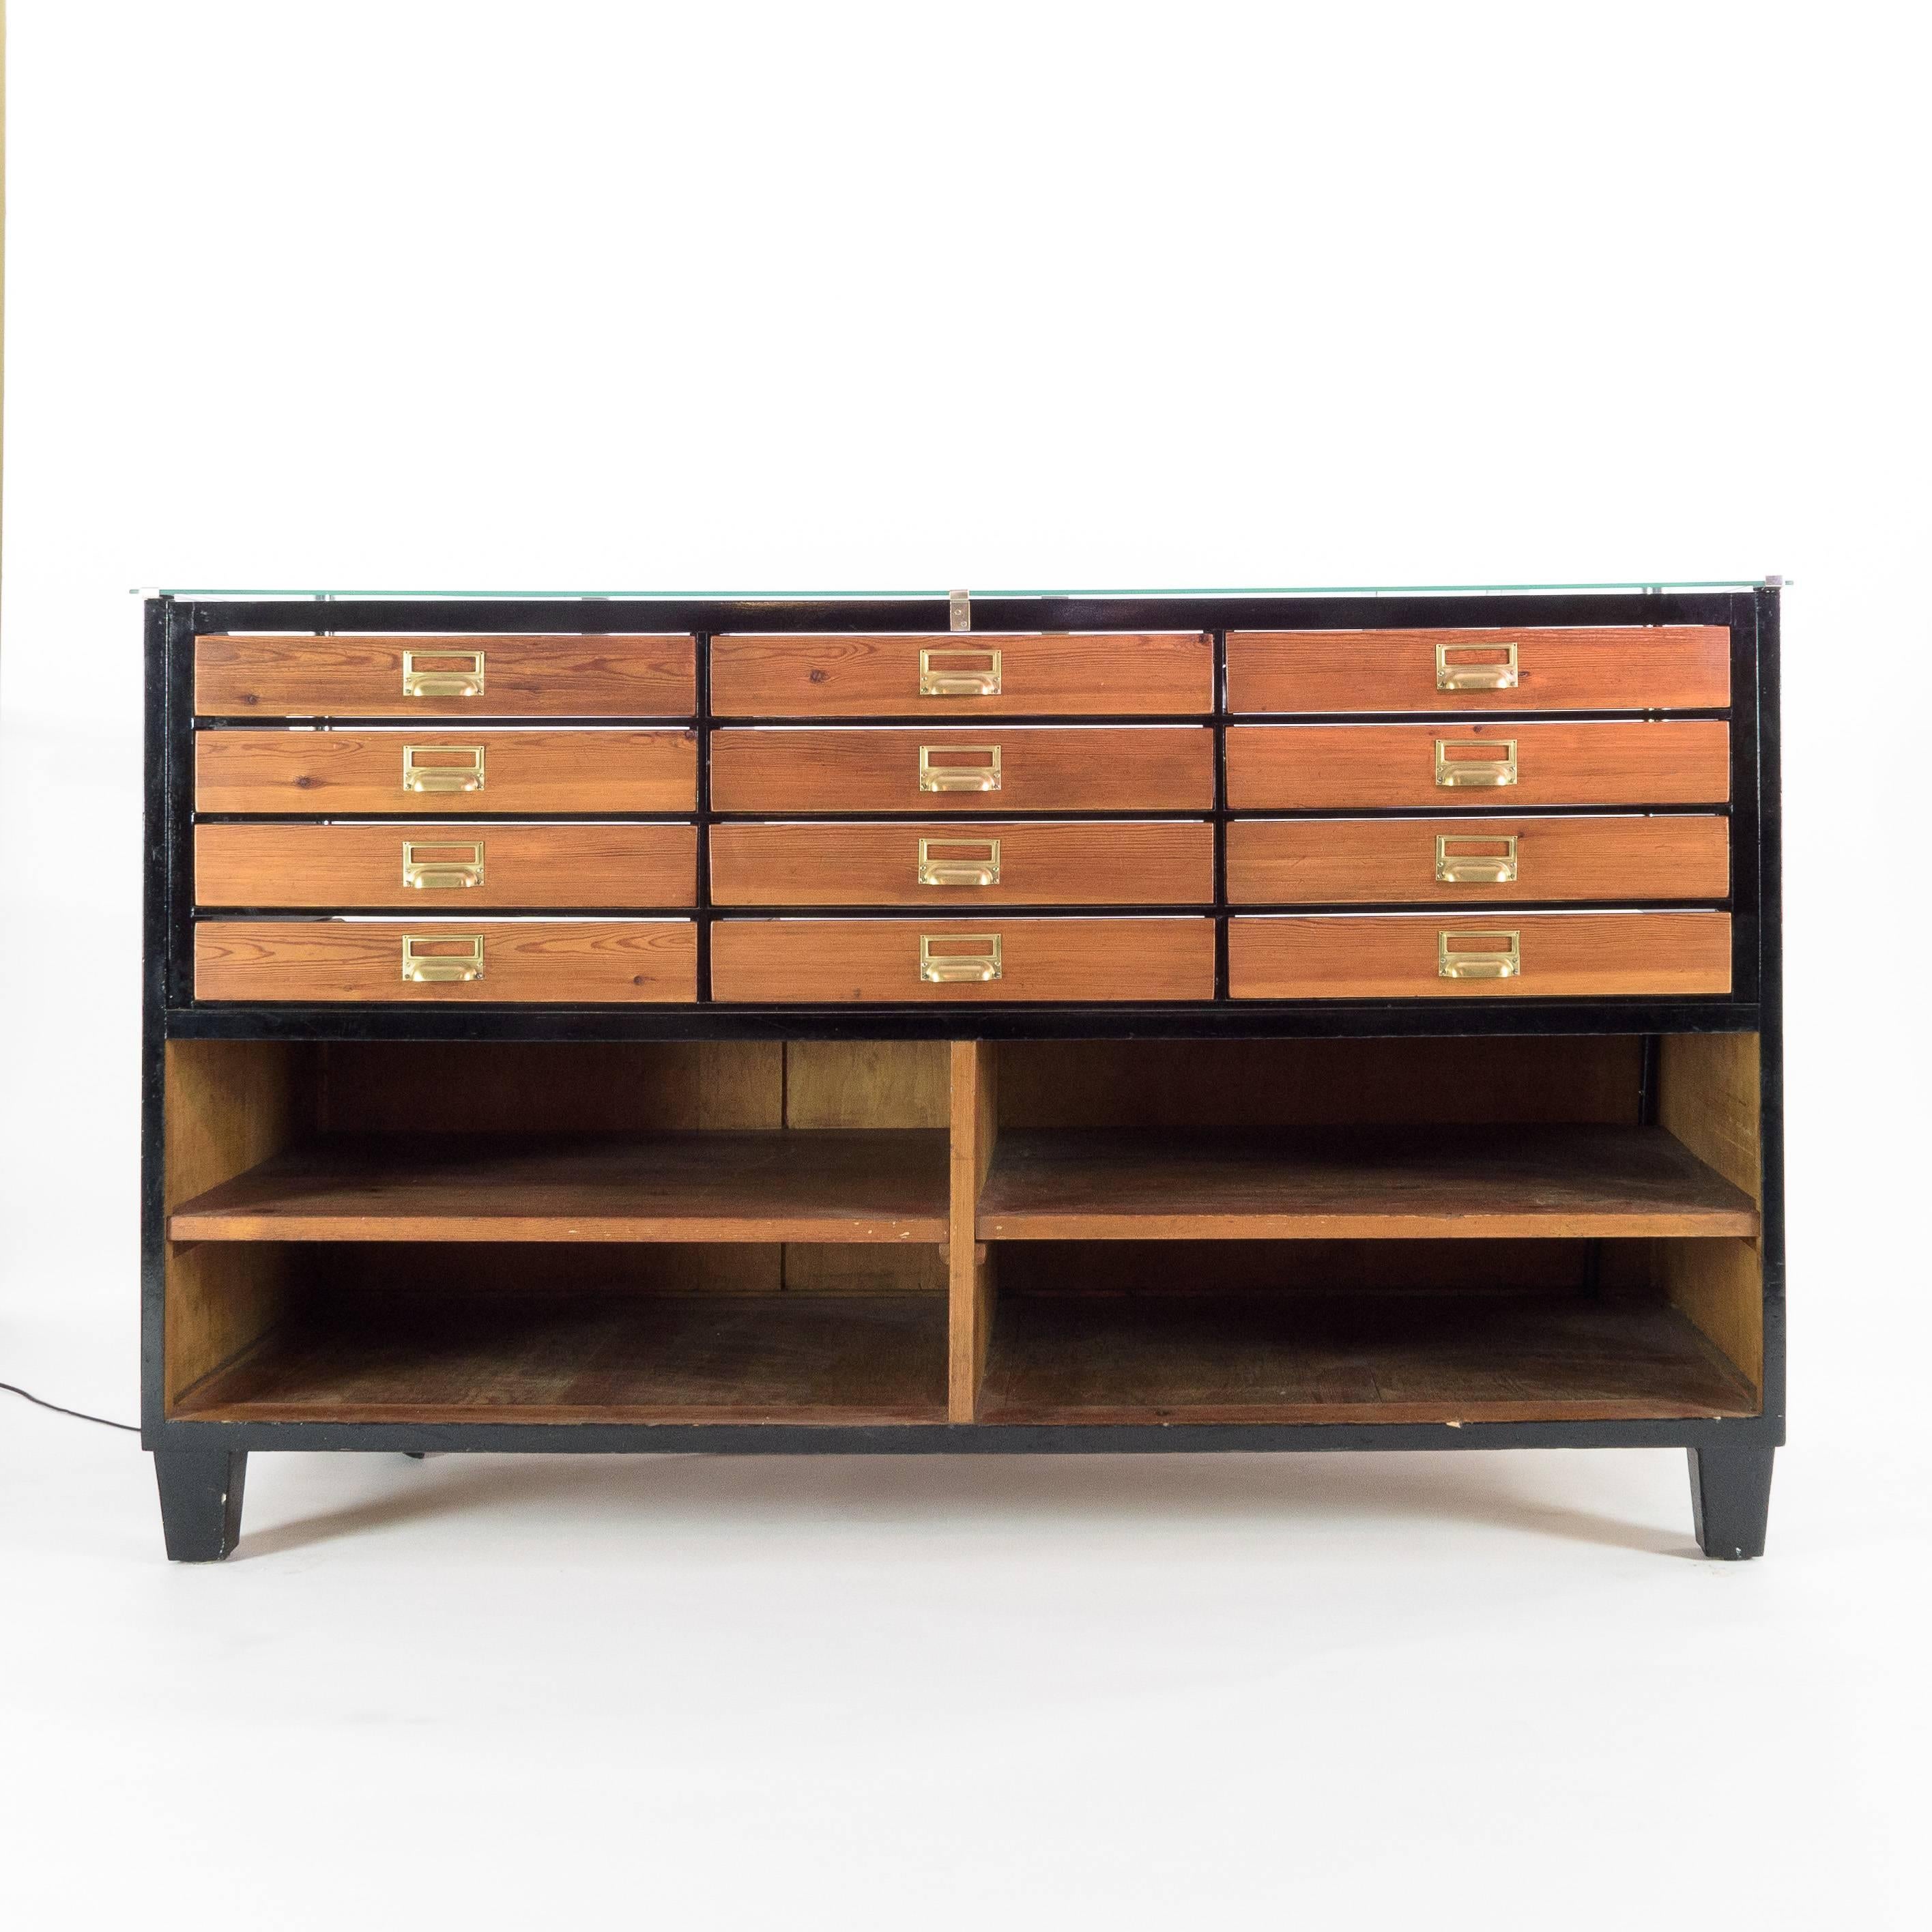 Mid-20th century ebonized haberdashery drawers, the arrangement of twelve graduated drawers above full depth storage, illuminated.